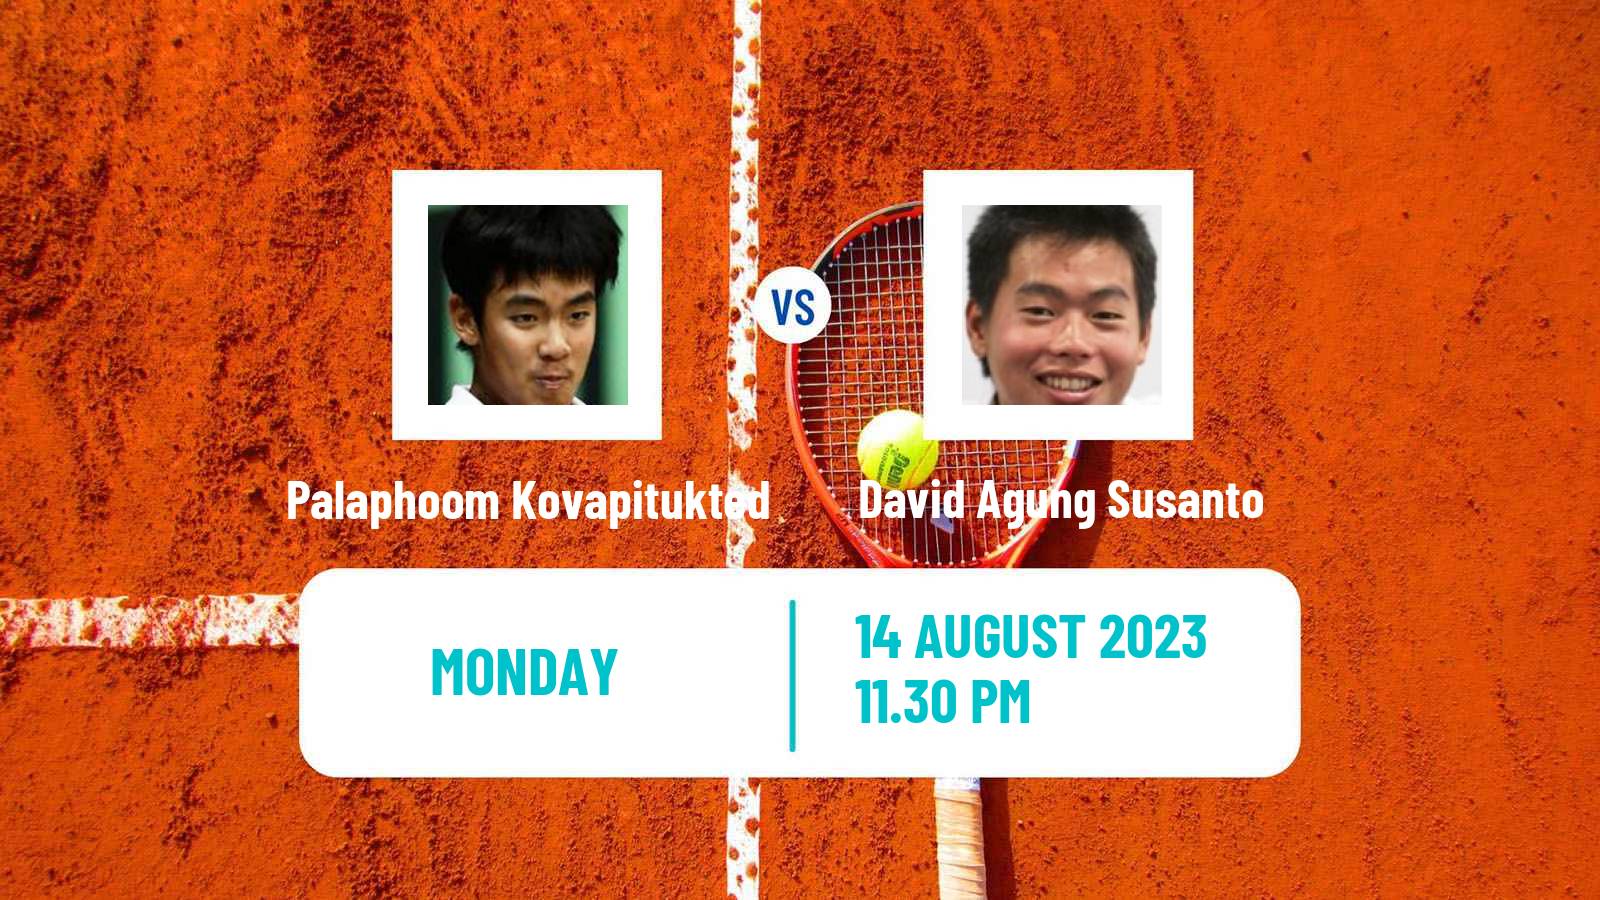 Tennis ITF M25 Jakarta 7 Men Palaphoom Kovapitukted - David Agung Susanto